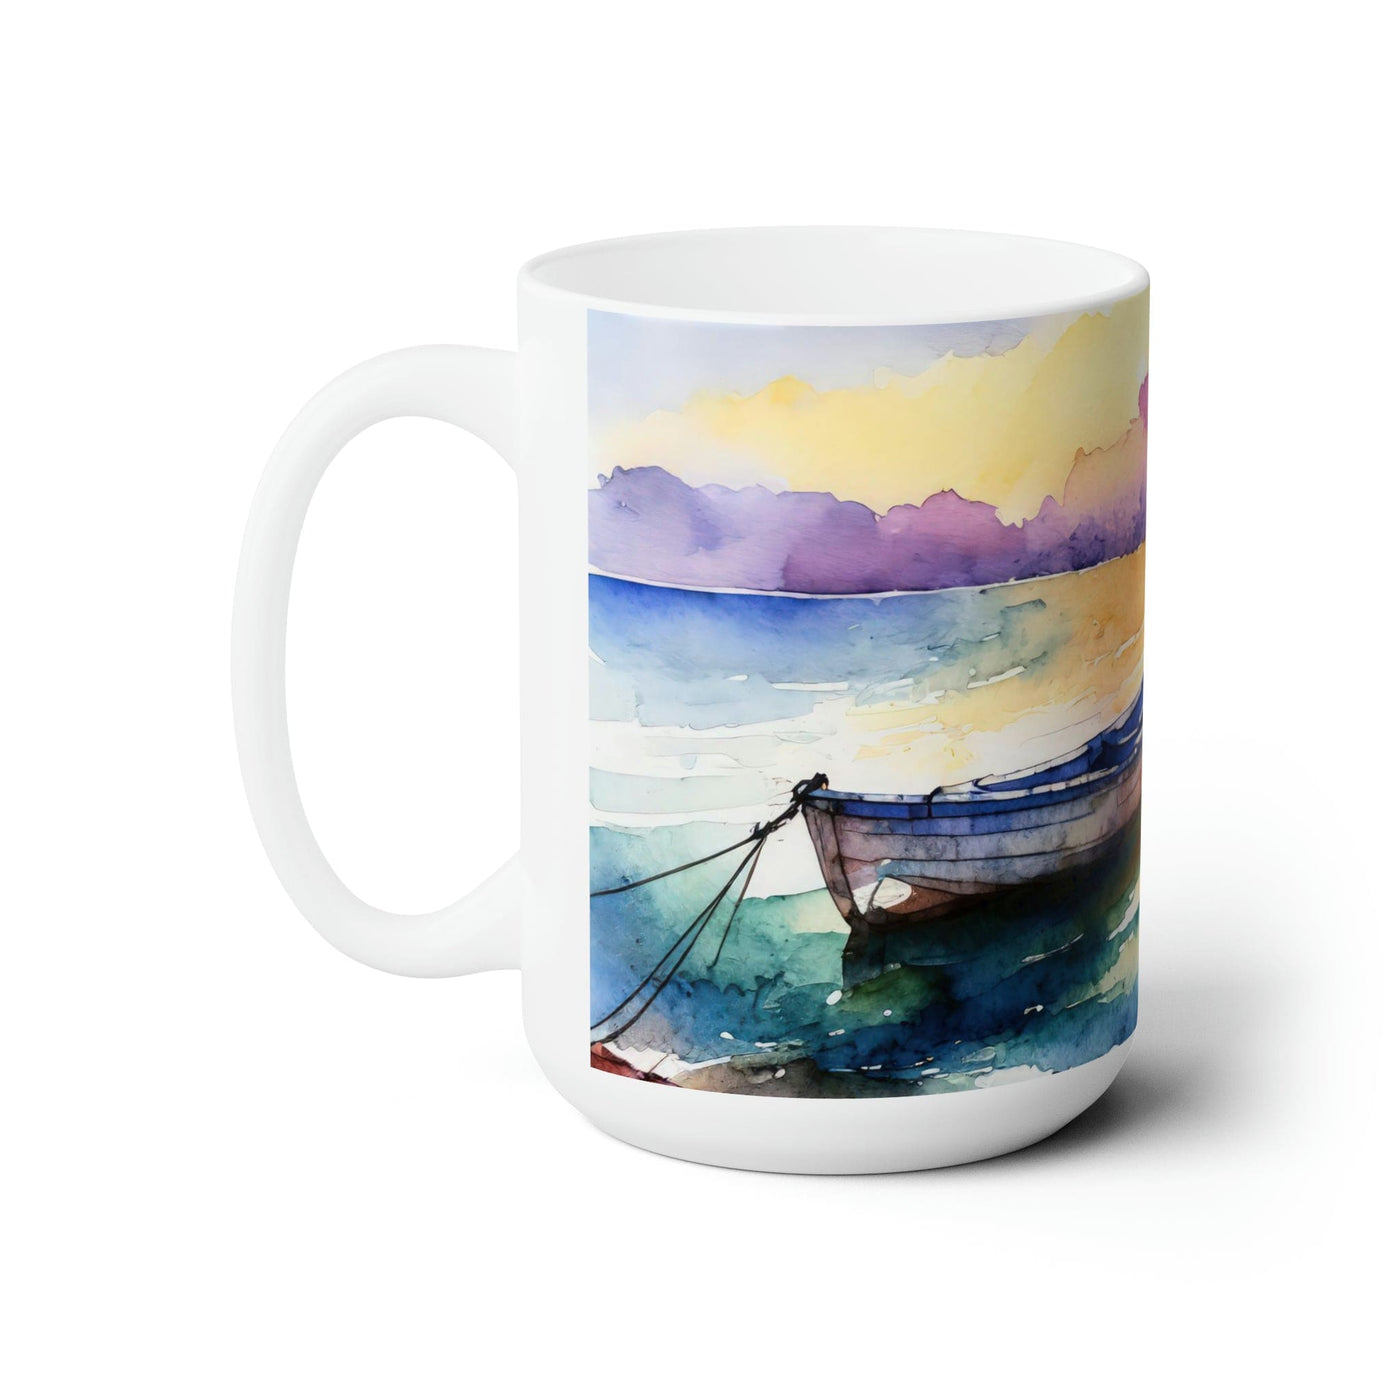 Ceramic Mug 15oz The Peace Of God - Gentle Sunrise Illustration Decorative